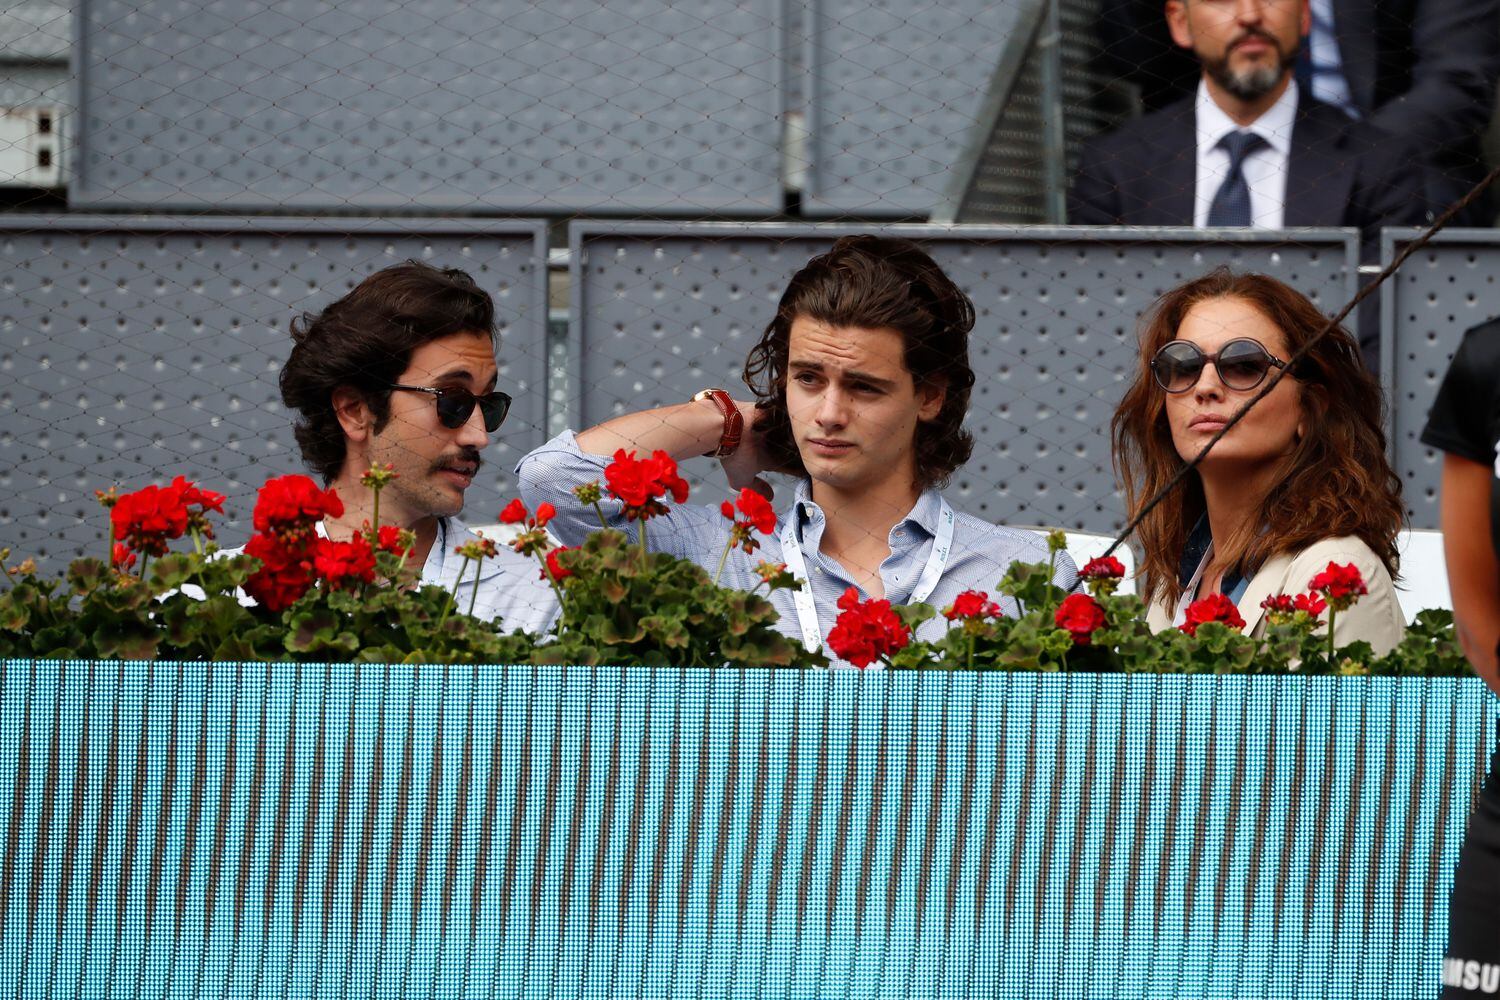 La modelo y presentadora Jose Toledo con sus hijos Diego y Daniel Martínez-Bordiú Toledo en un partido de tenis en mayo de 2019.